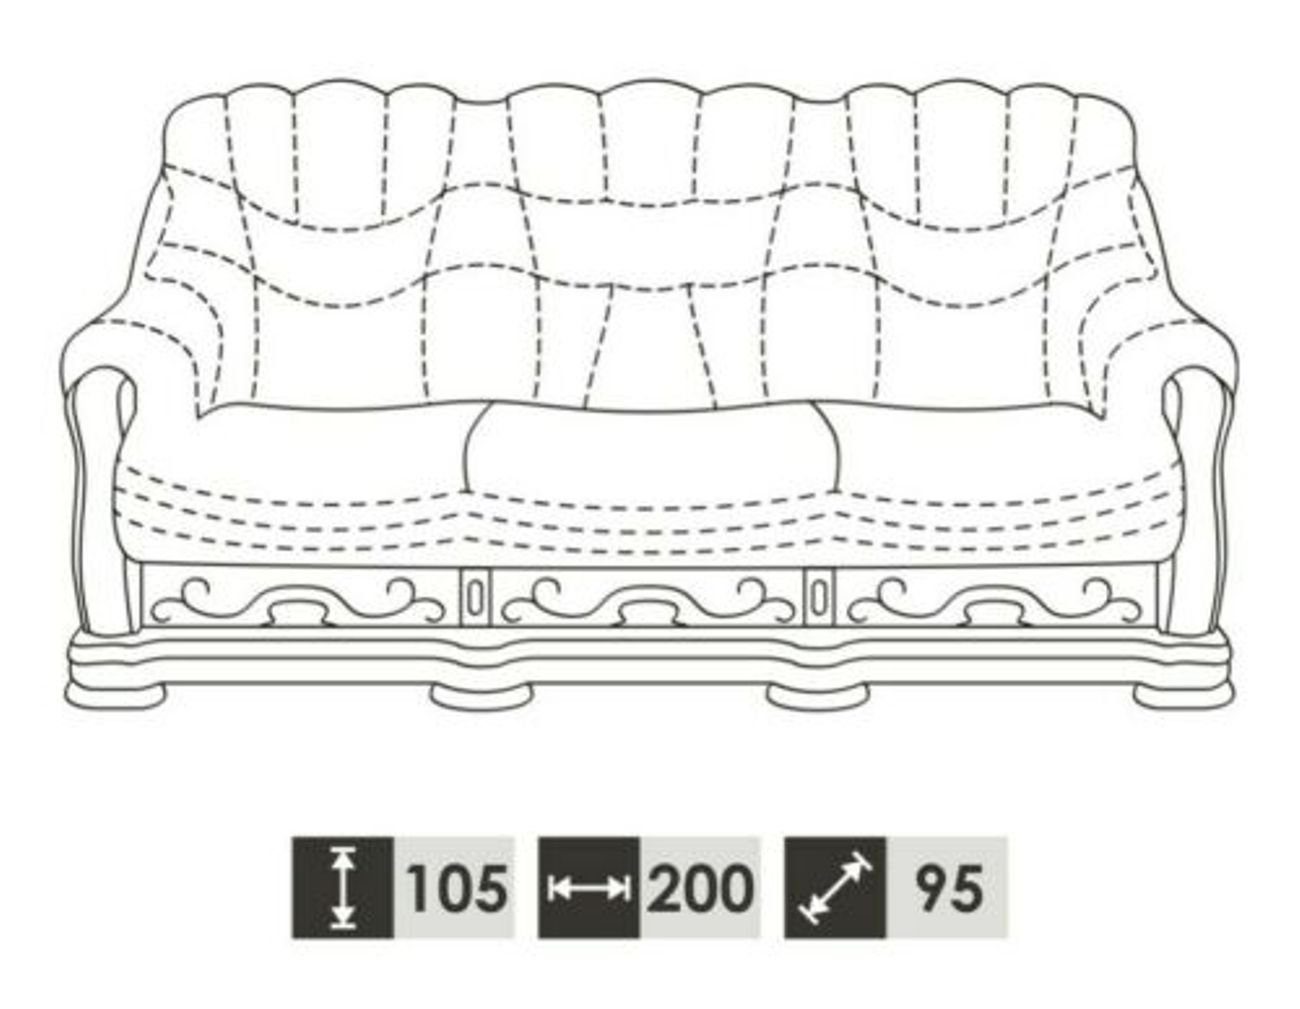 JVmoebel 3-Sitzer, Klassische Dreisitzer Couch Sofa 3 Sitzer Couch Polster Ledersofa